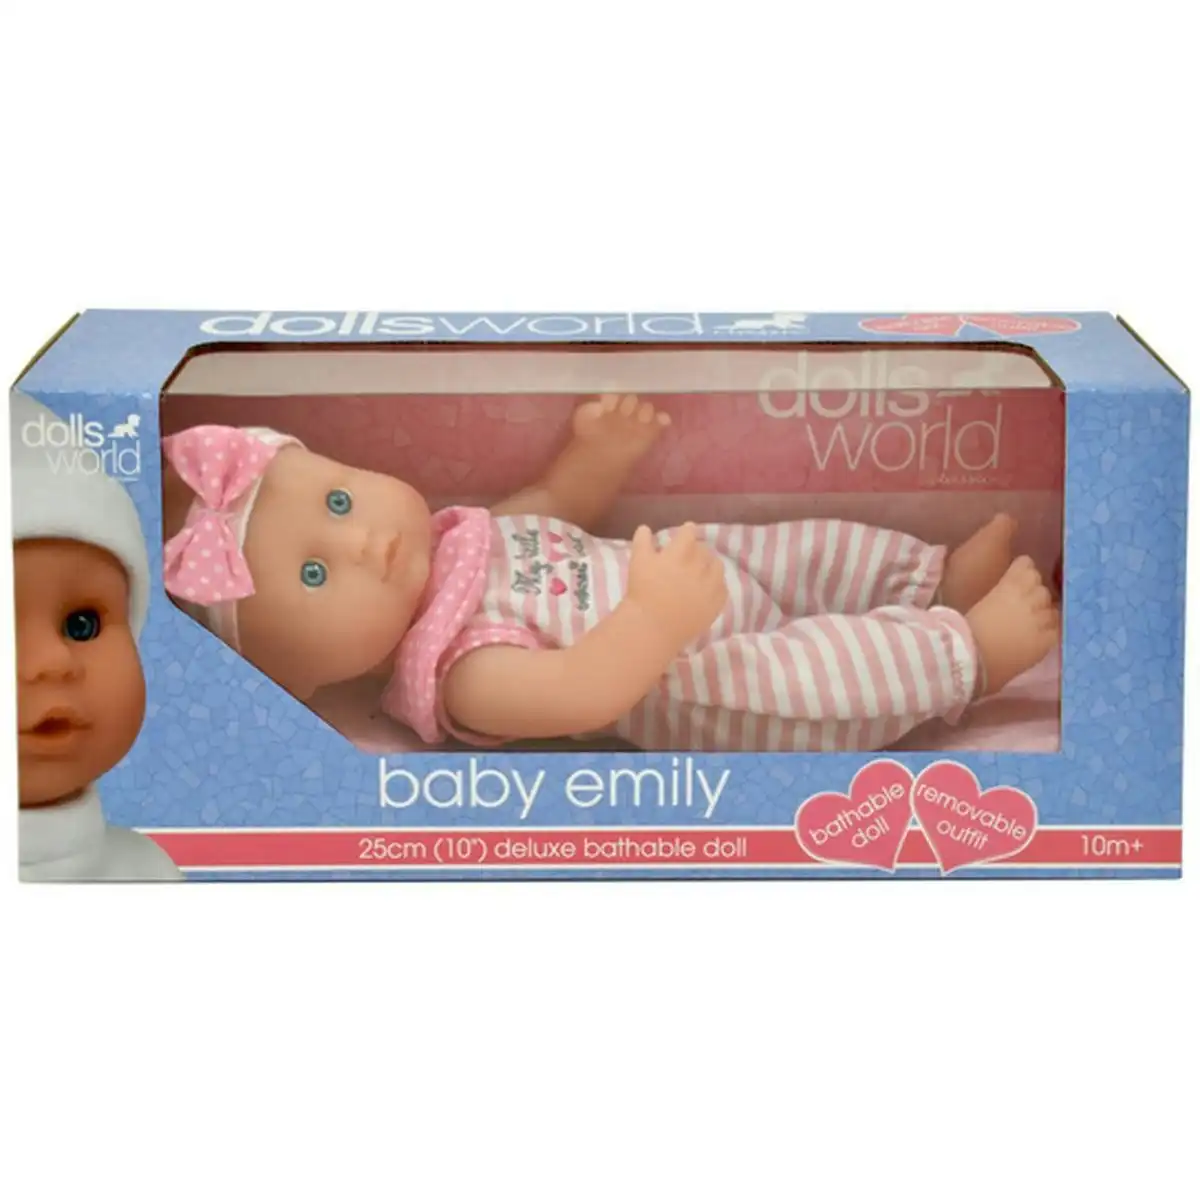 DollsWorld - Baby Emily 25cm